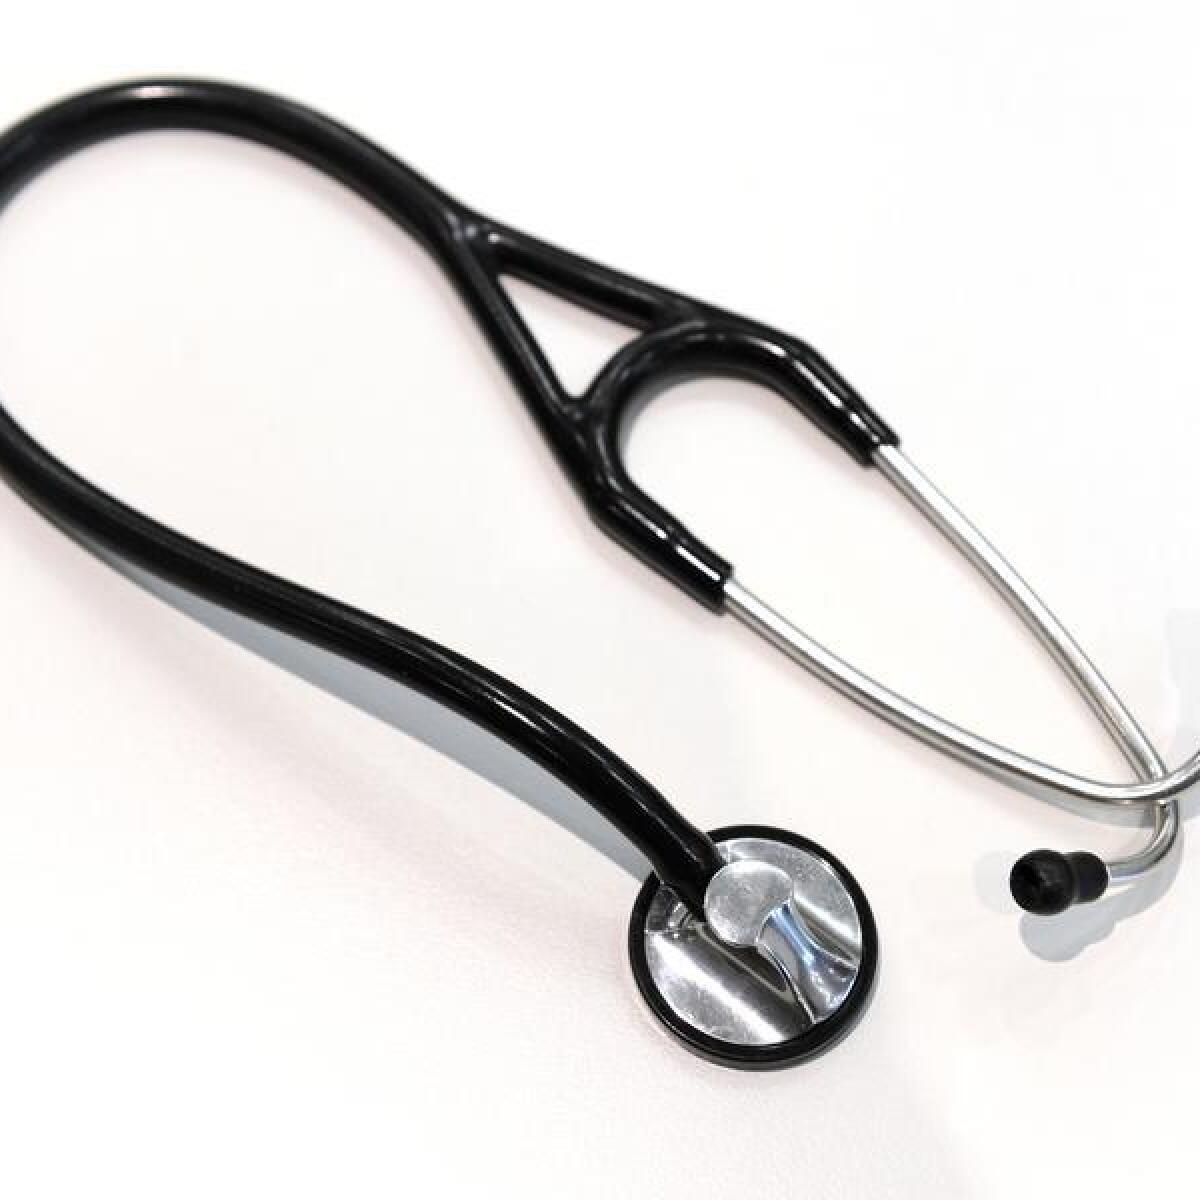 Stethoscope (file image)